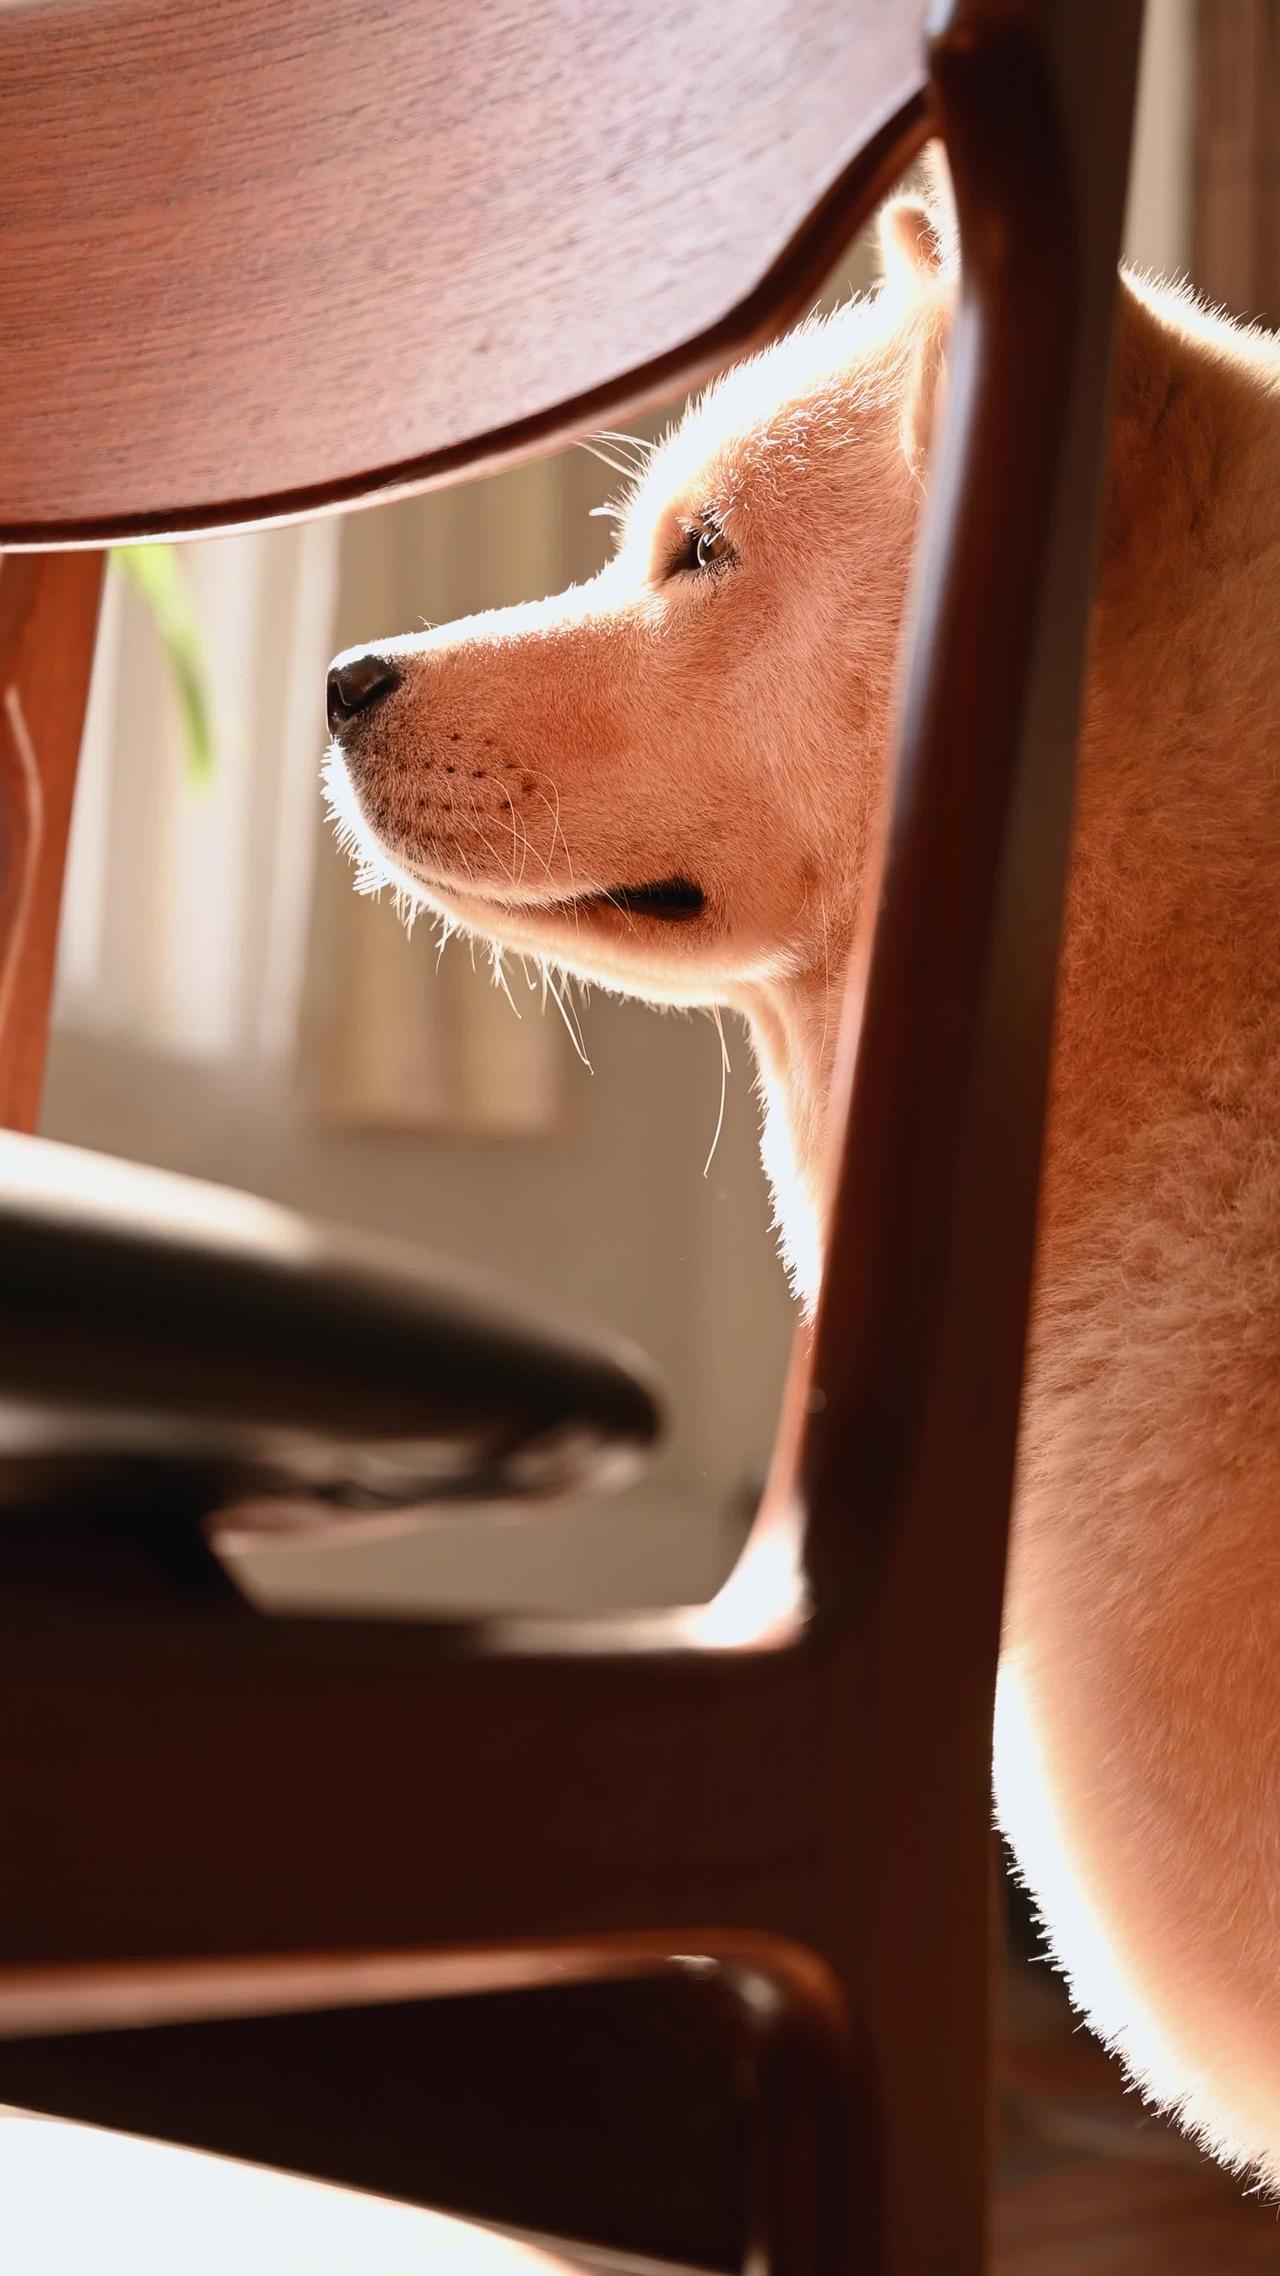 A Cute Dog Behind a chair